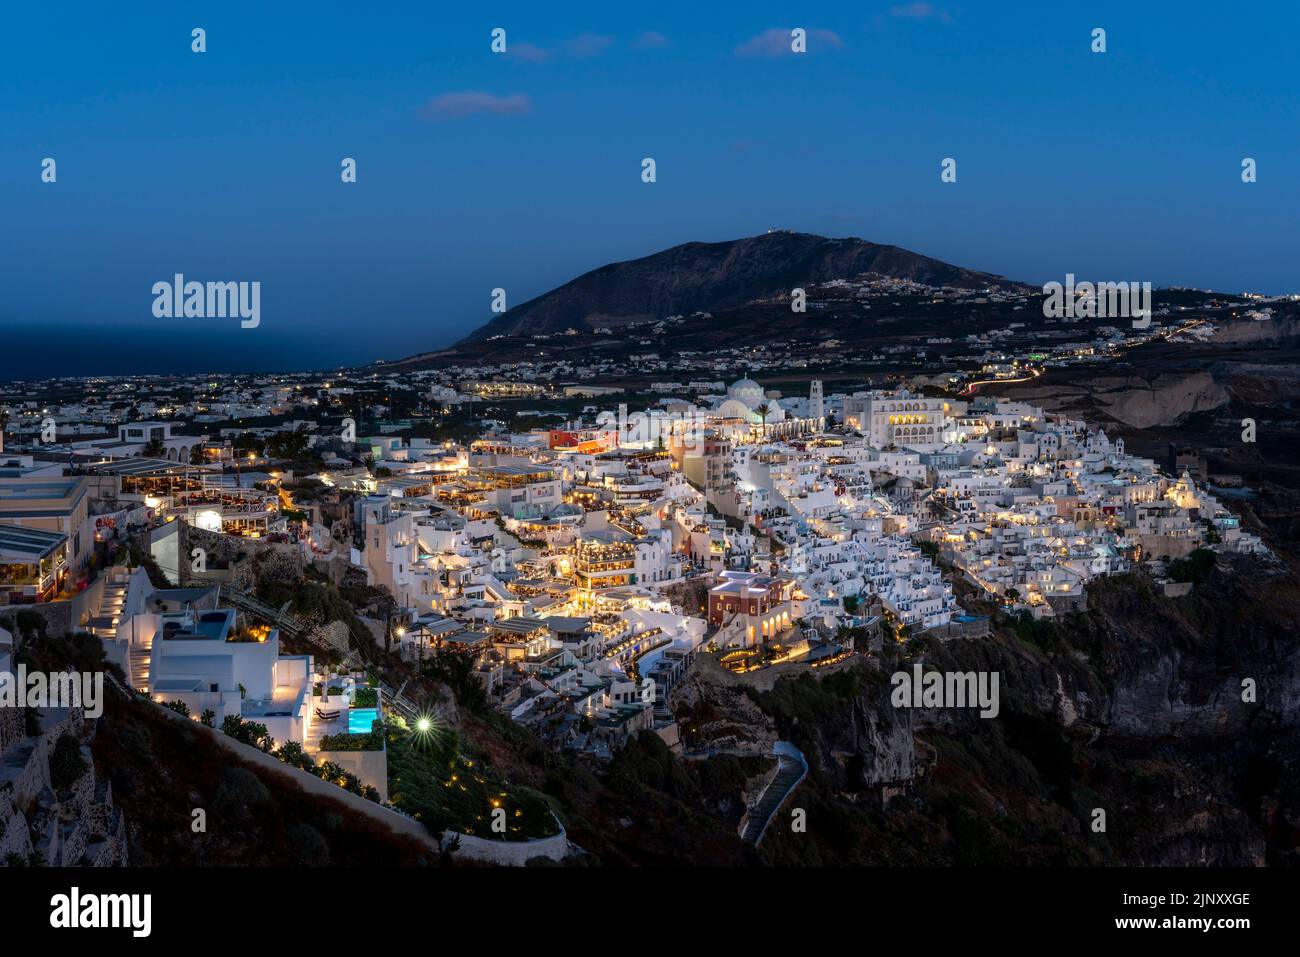 Una vista de la ciudad principal de Thira (Thera) en la isla de Santorini, islas griegas, Grecia. Foto de stock